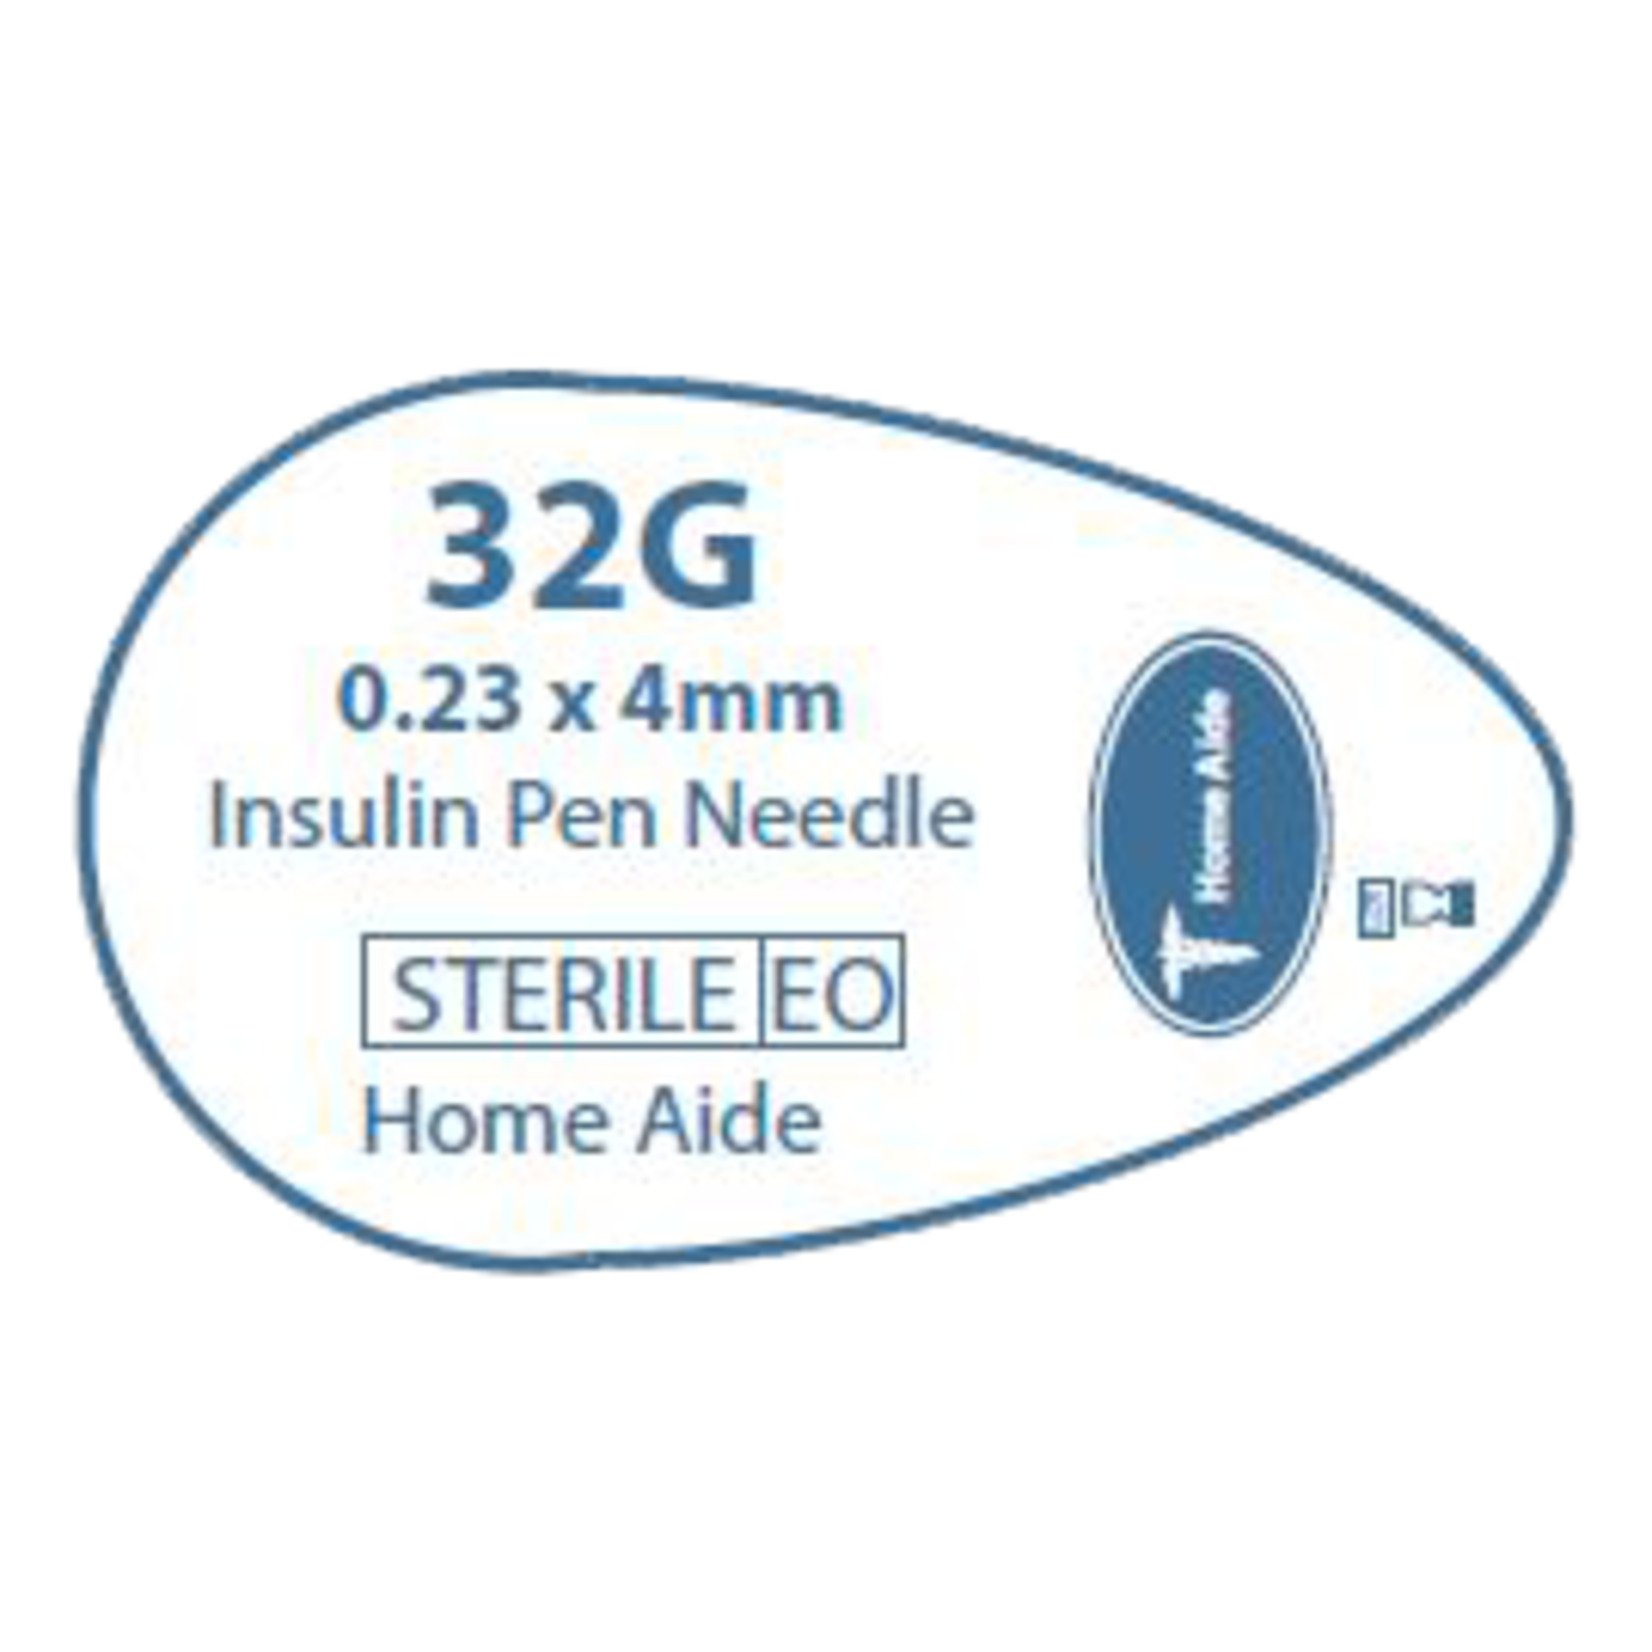 Easy Comfort Pen Needles 32G 4mm - NDC# 91237-0001-77 - Durable